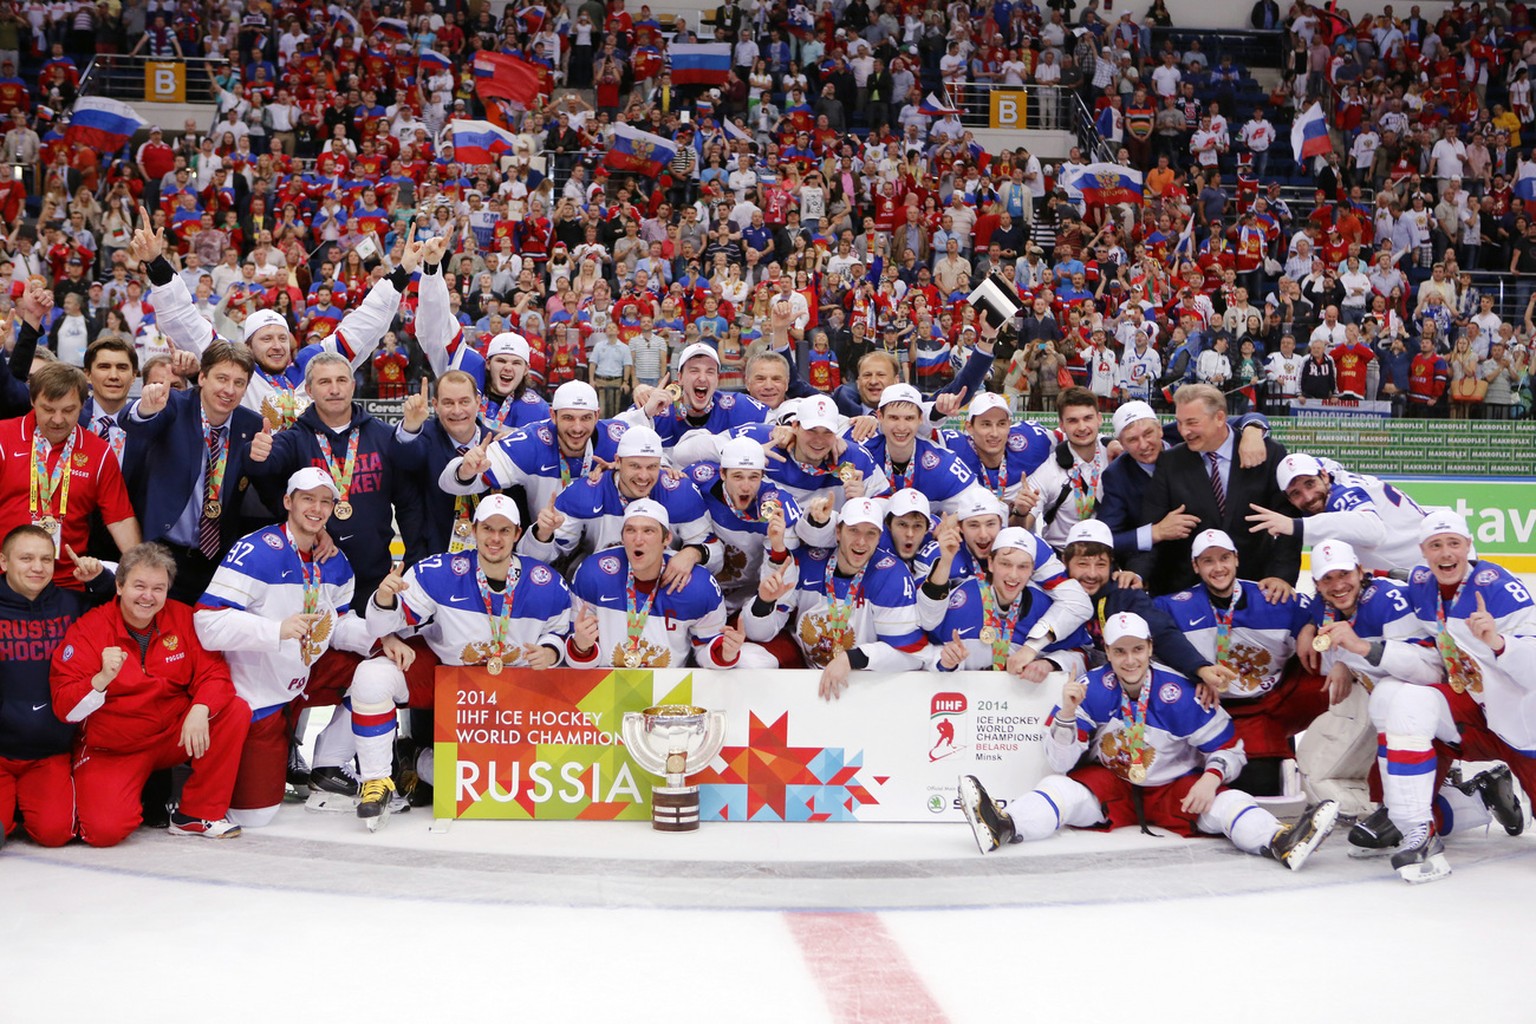 2014 holte Russland in Minsk den Weltmeistertitel vor unzähligen russischen Fans.